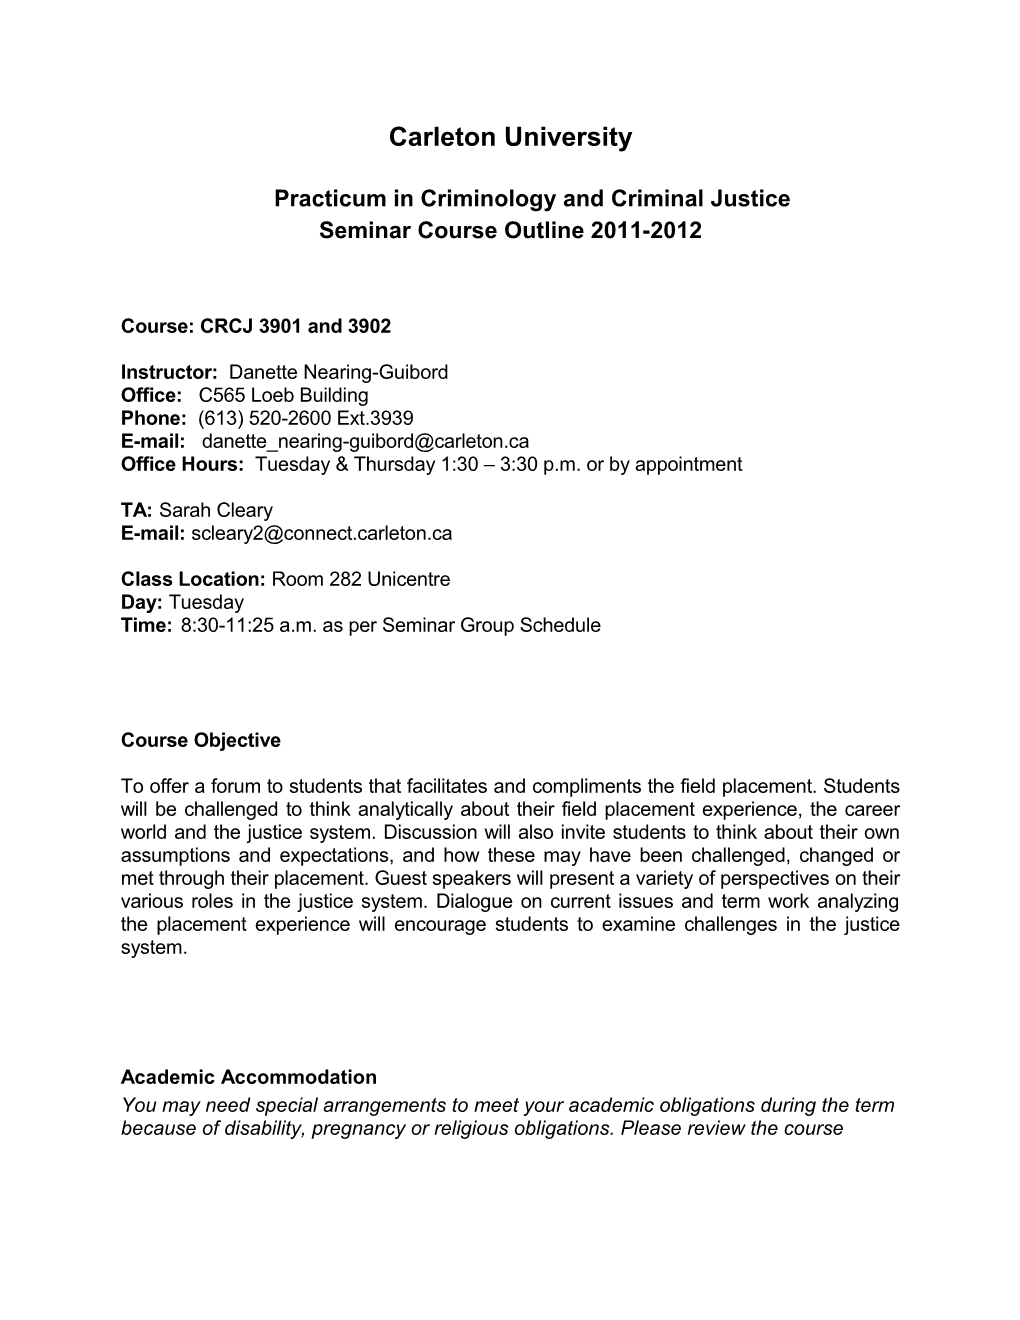 Criminology Placement Seminar Course Ou